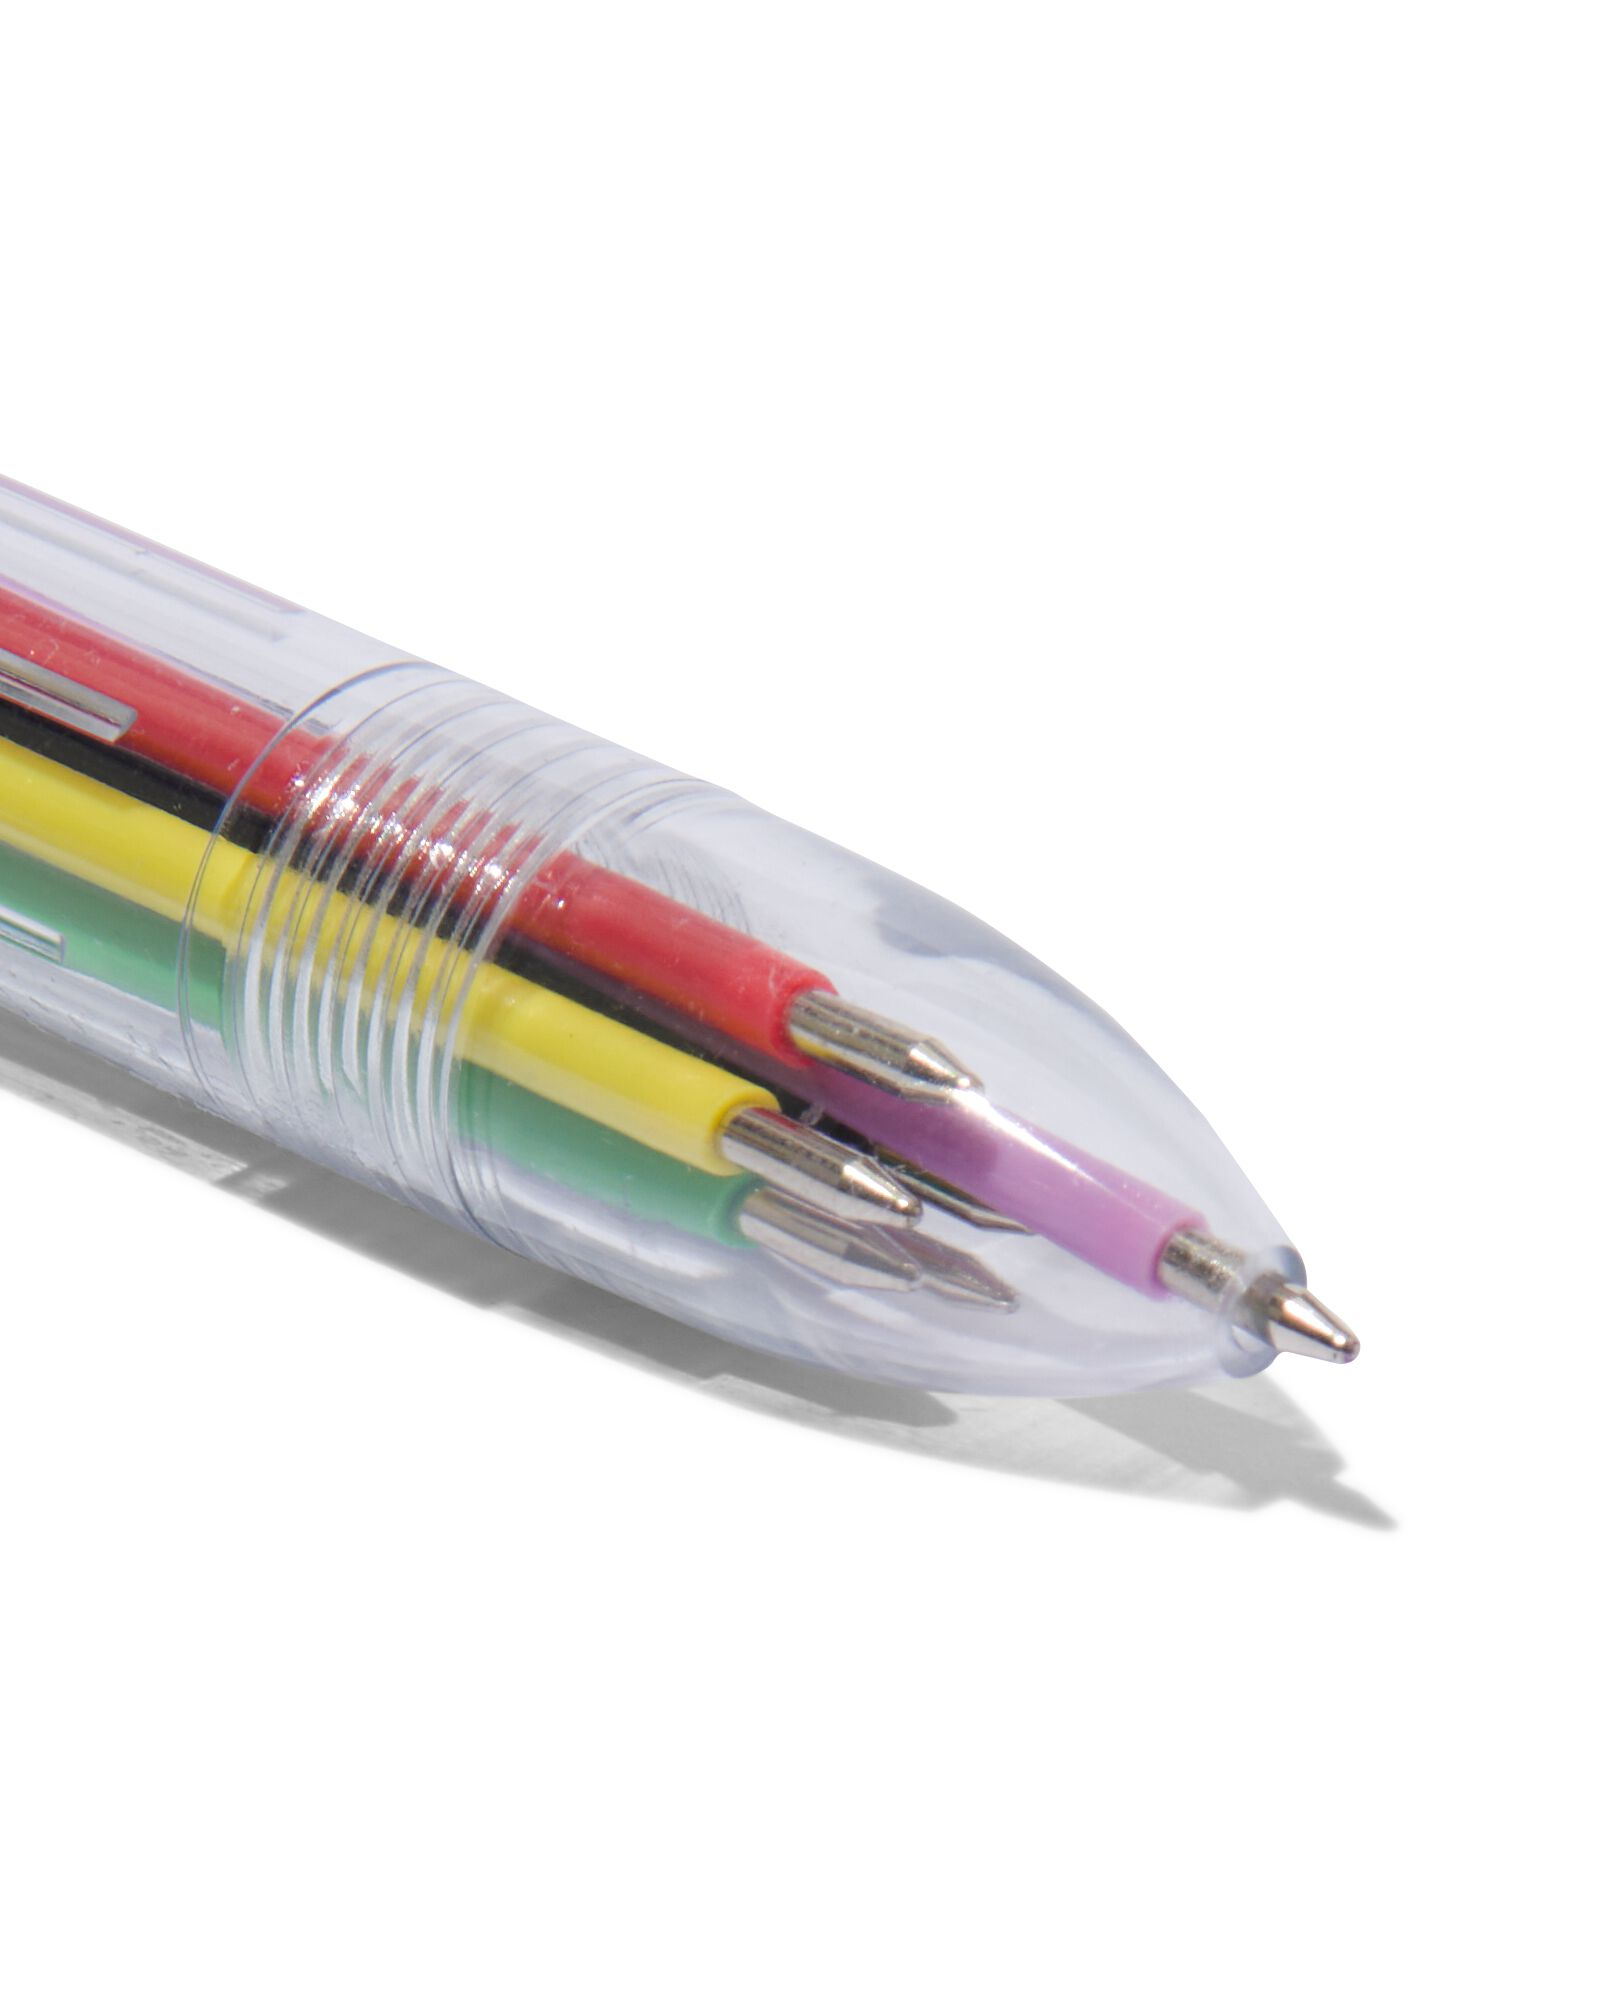 Stylo à bille multicolore 1pc, stylo multicolore 6 en 1, stylo